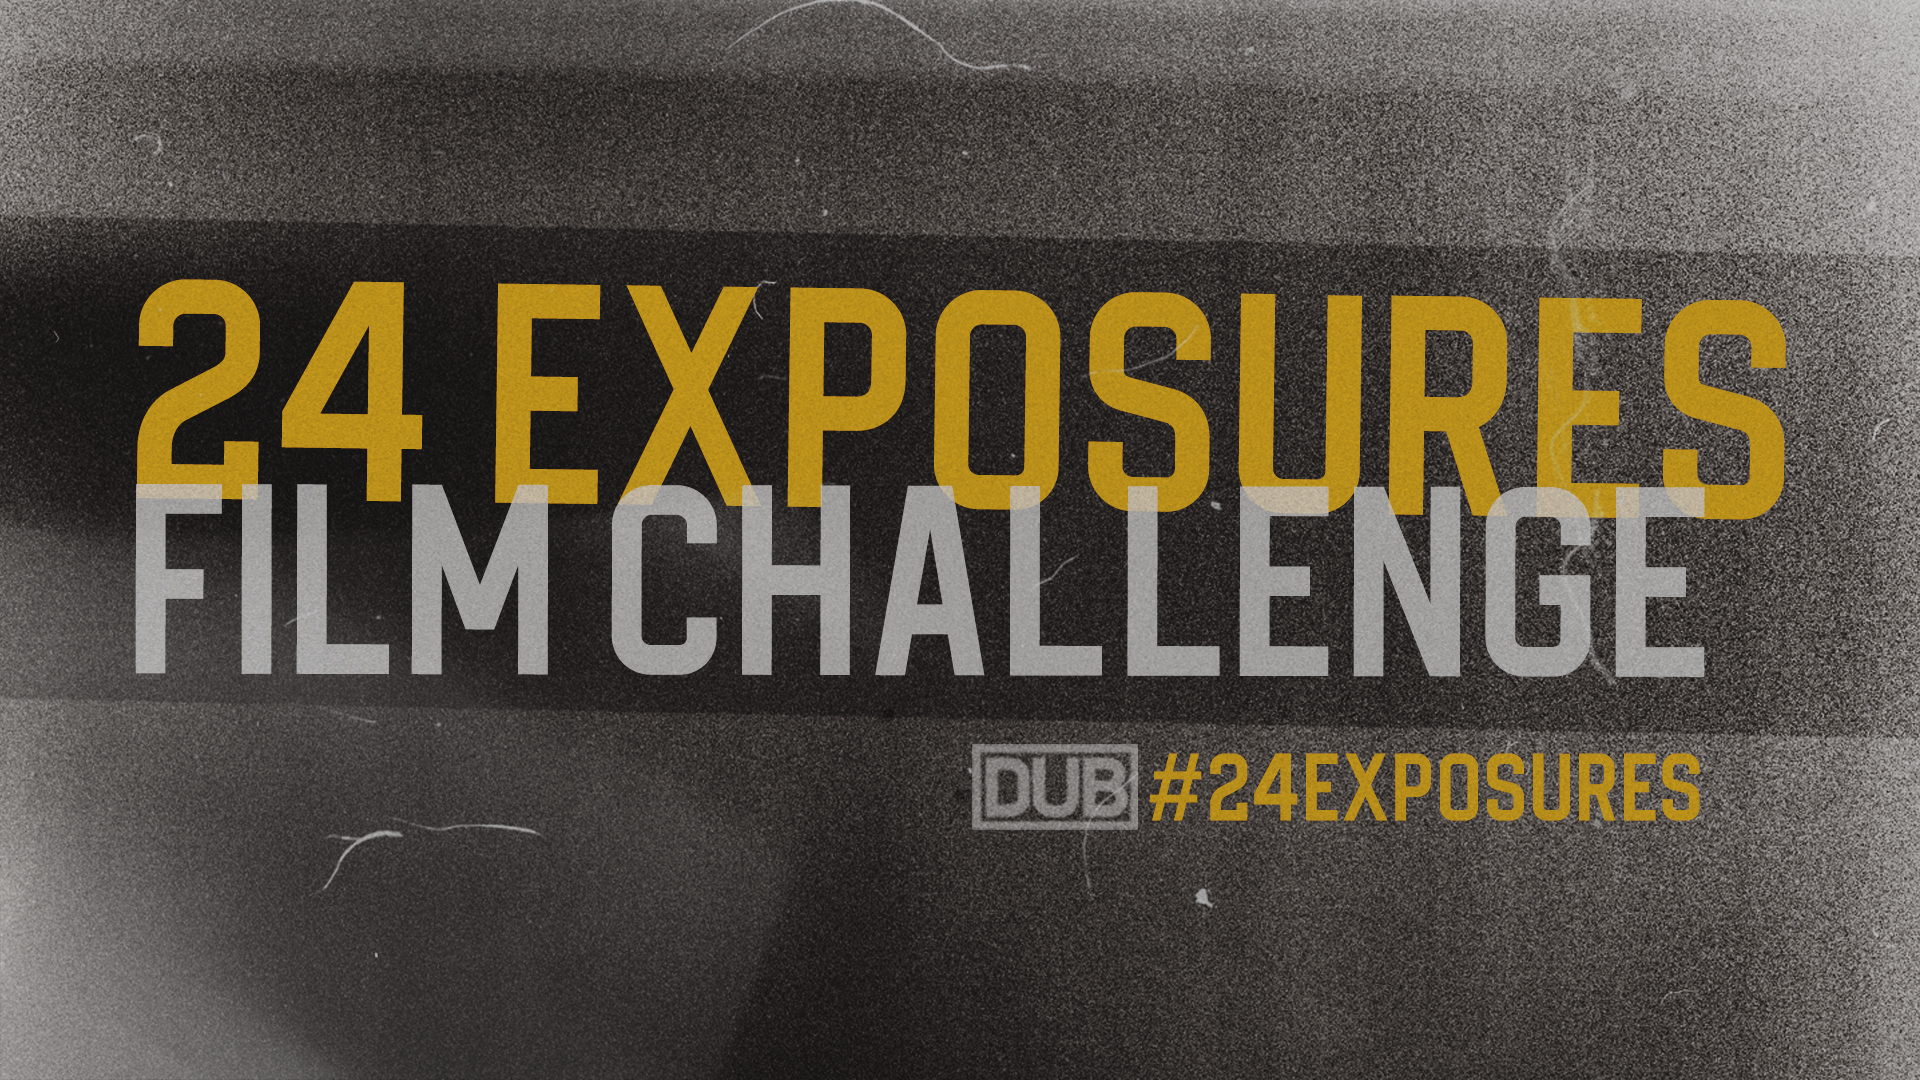 24 Exposures Film Challenge